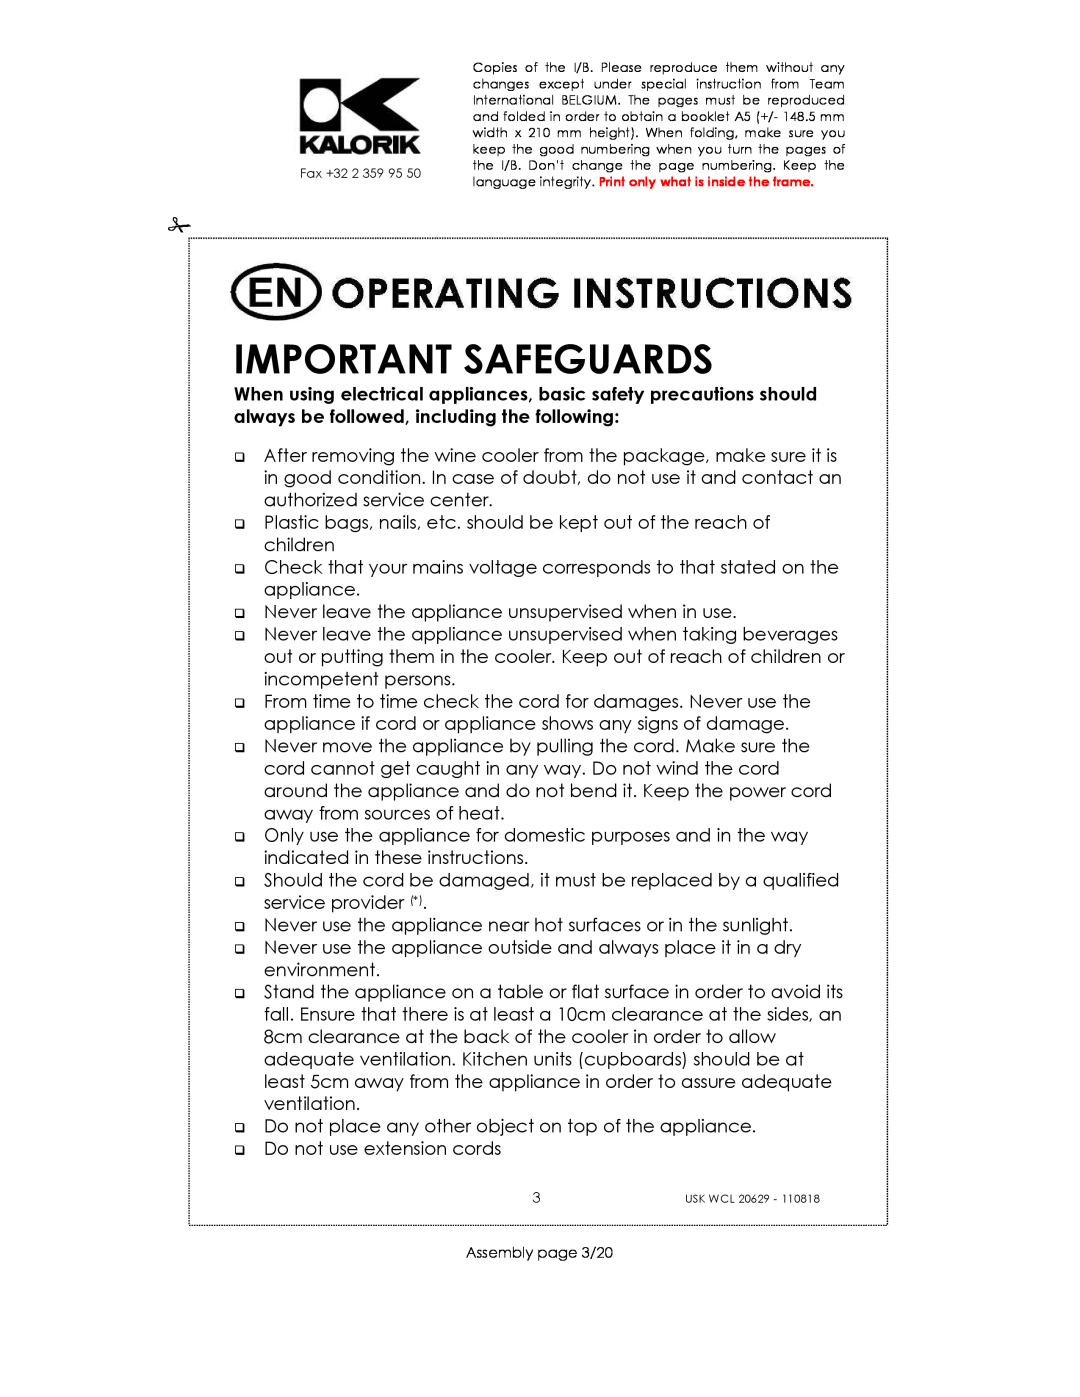 Kalorik USK WCL 20629 manual Important Safeguards 